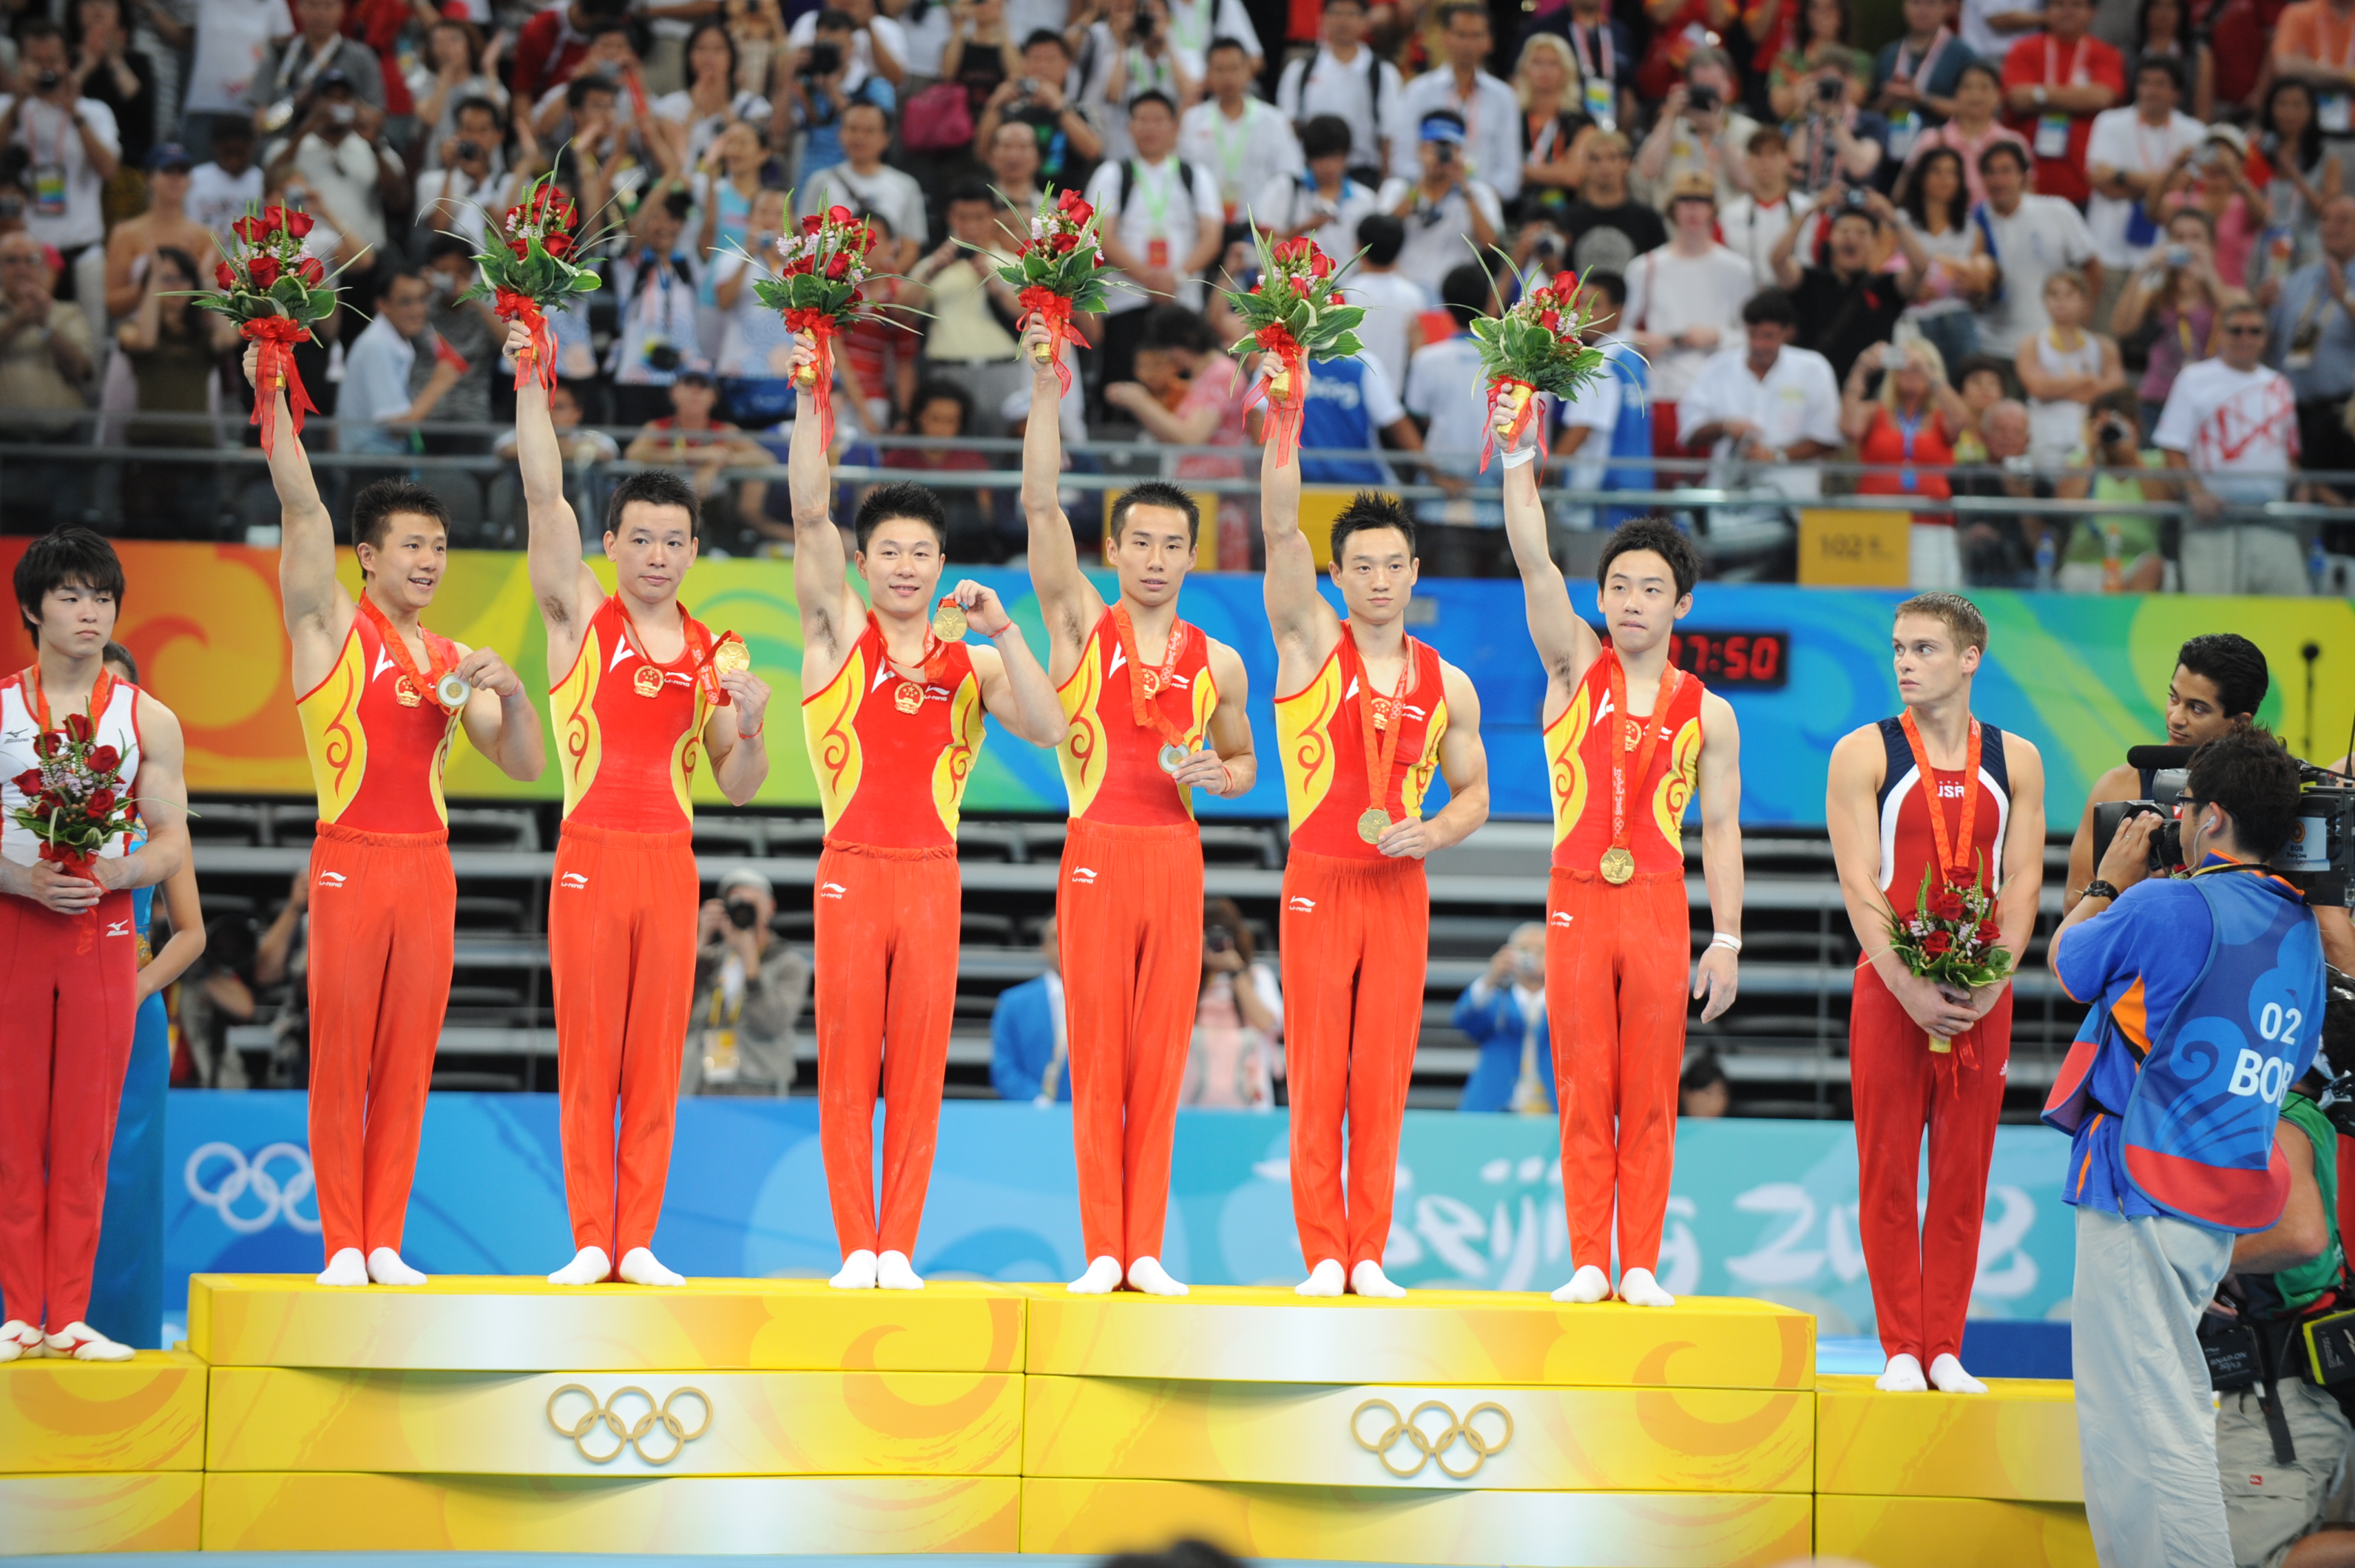 2008年,在北京奥运会上,中国男子体操队获得团体冠军